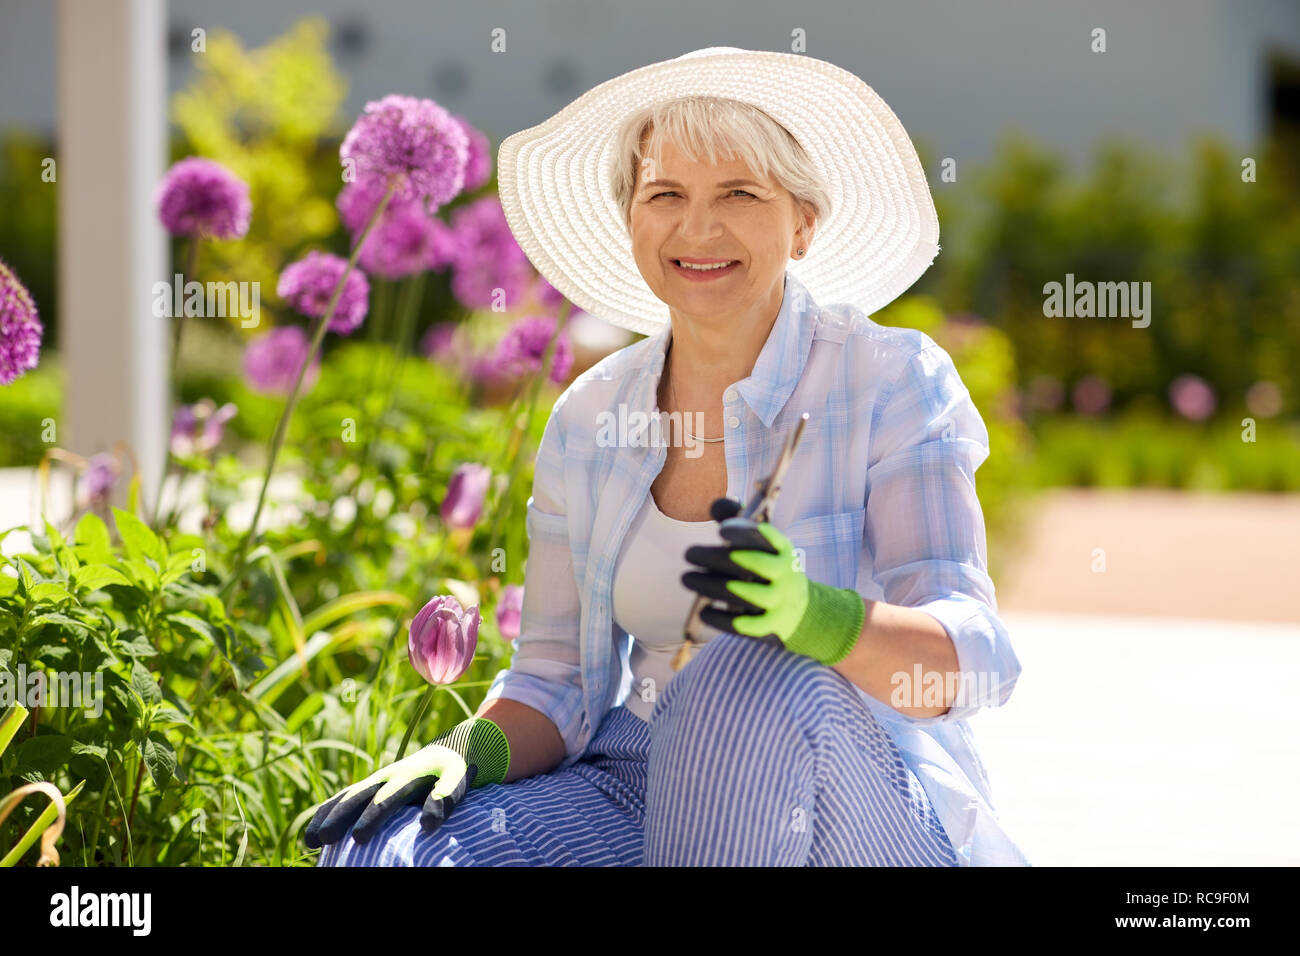 Ältere Frau mit Garten Gartenschere und Blumen Stockfoto